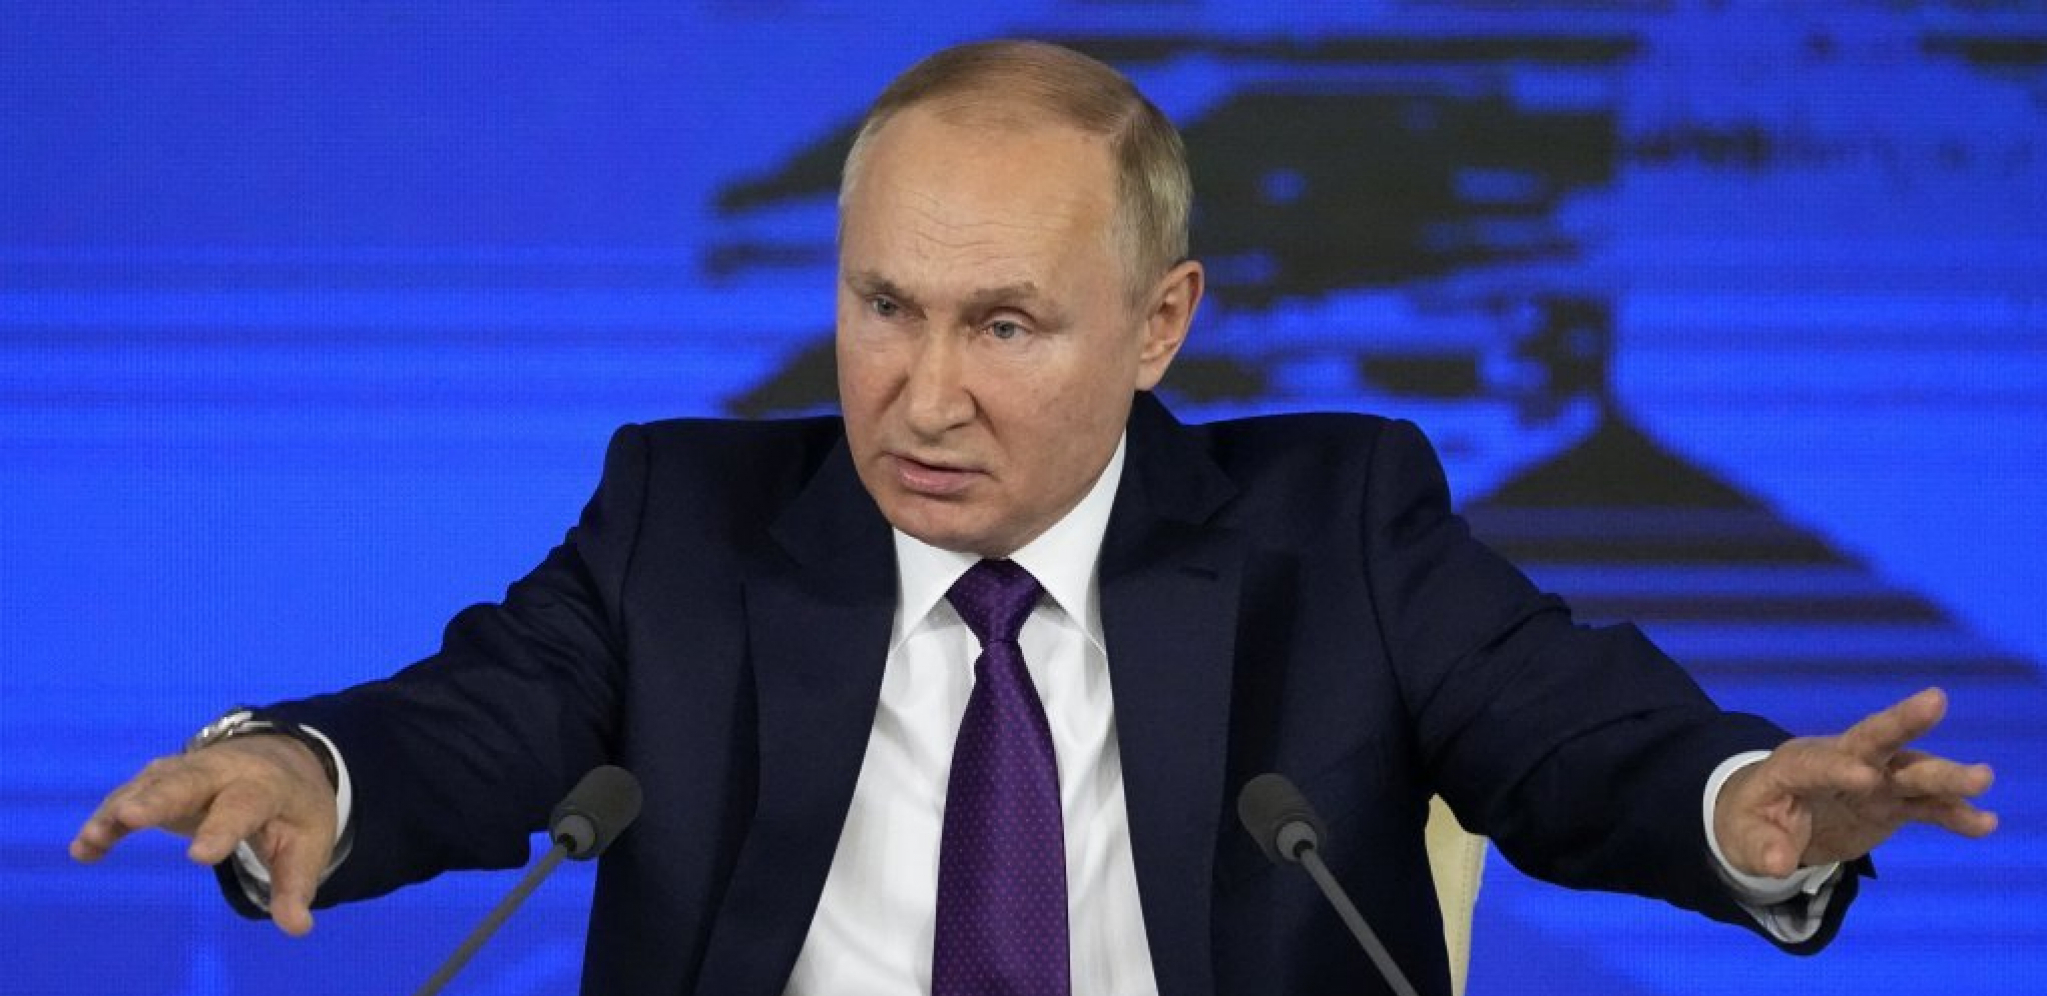 VALUTNO TRŽIŠTE PRIPREMITI ZA PROMENE Putin: Partneri su priznali